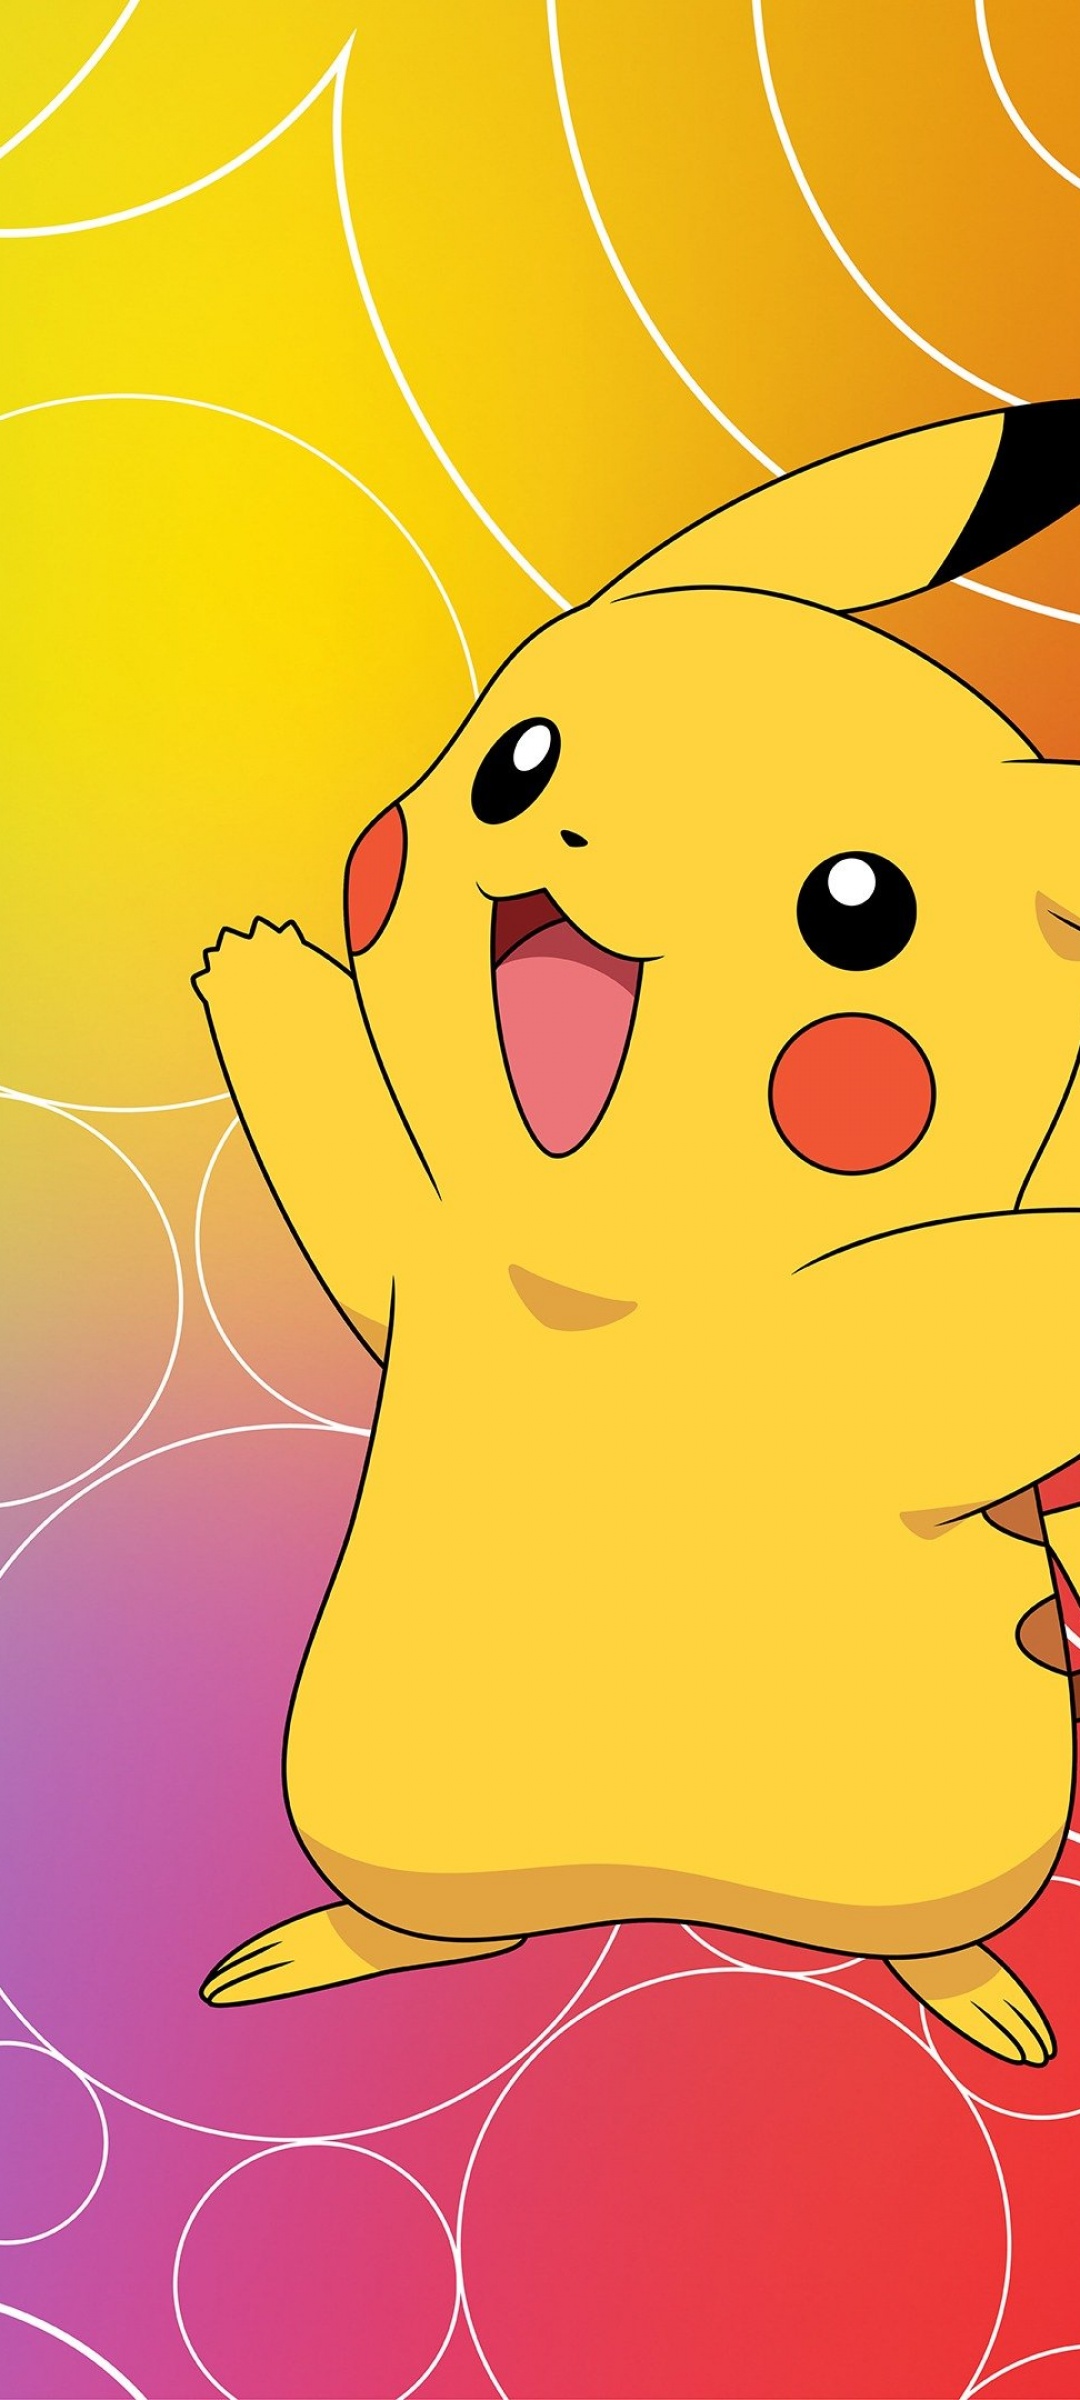 Pikachu  Pikachu wallpaper, Pikachu wallpaper iphone, Cute cartoon  wallpapers